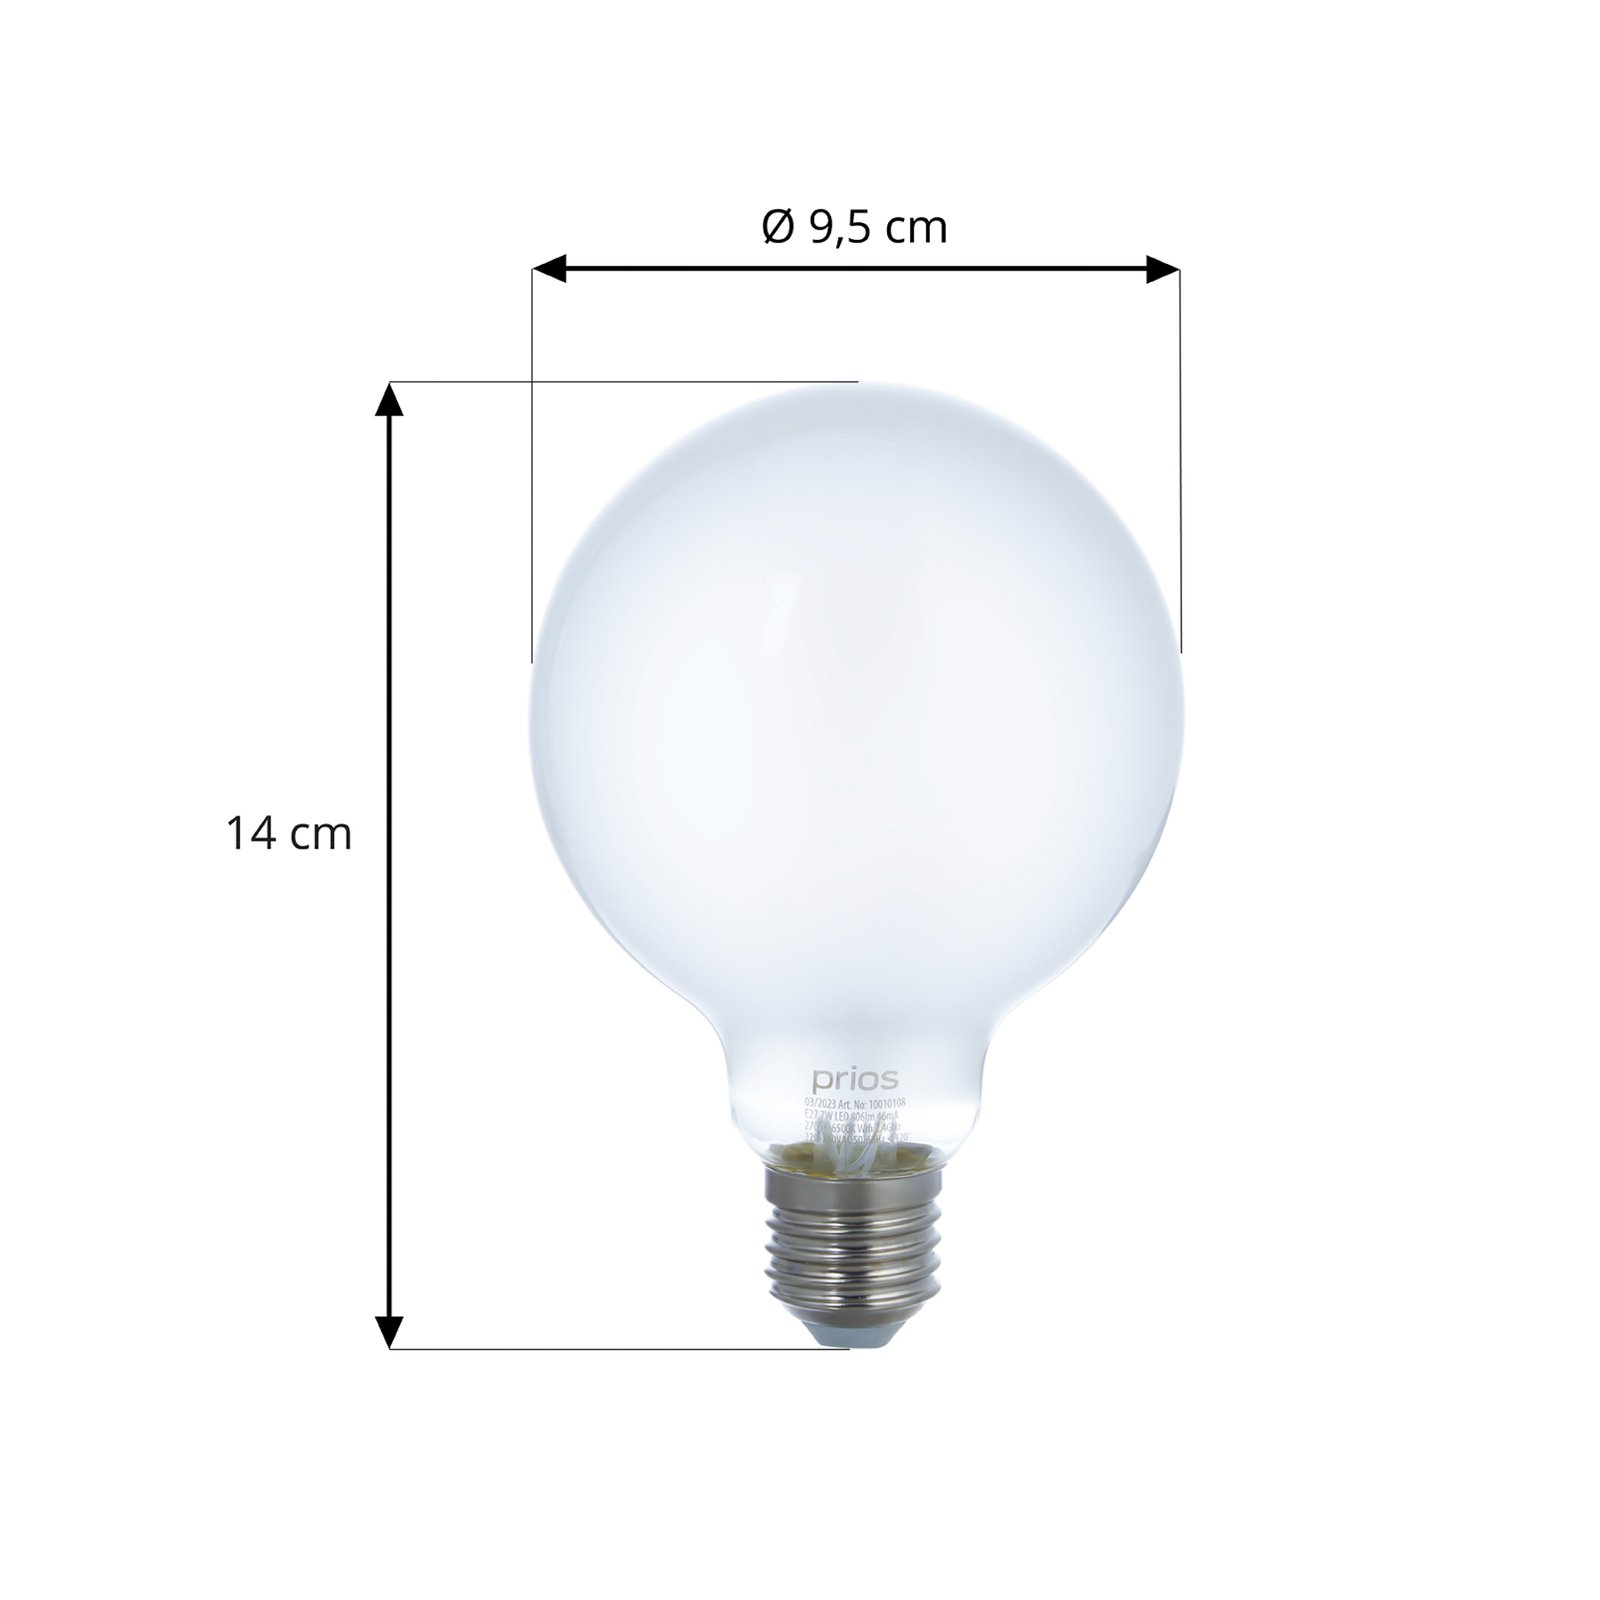 LUUMR Smart LED-lampuppsättning med 2 E27 G95 7W matt Tuya